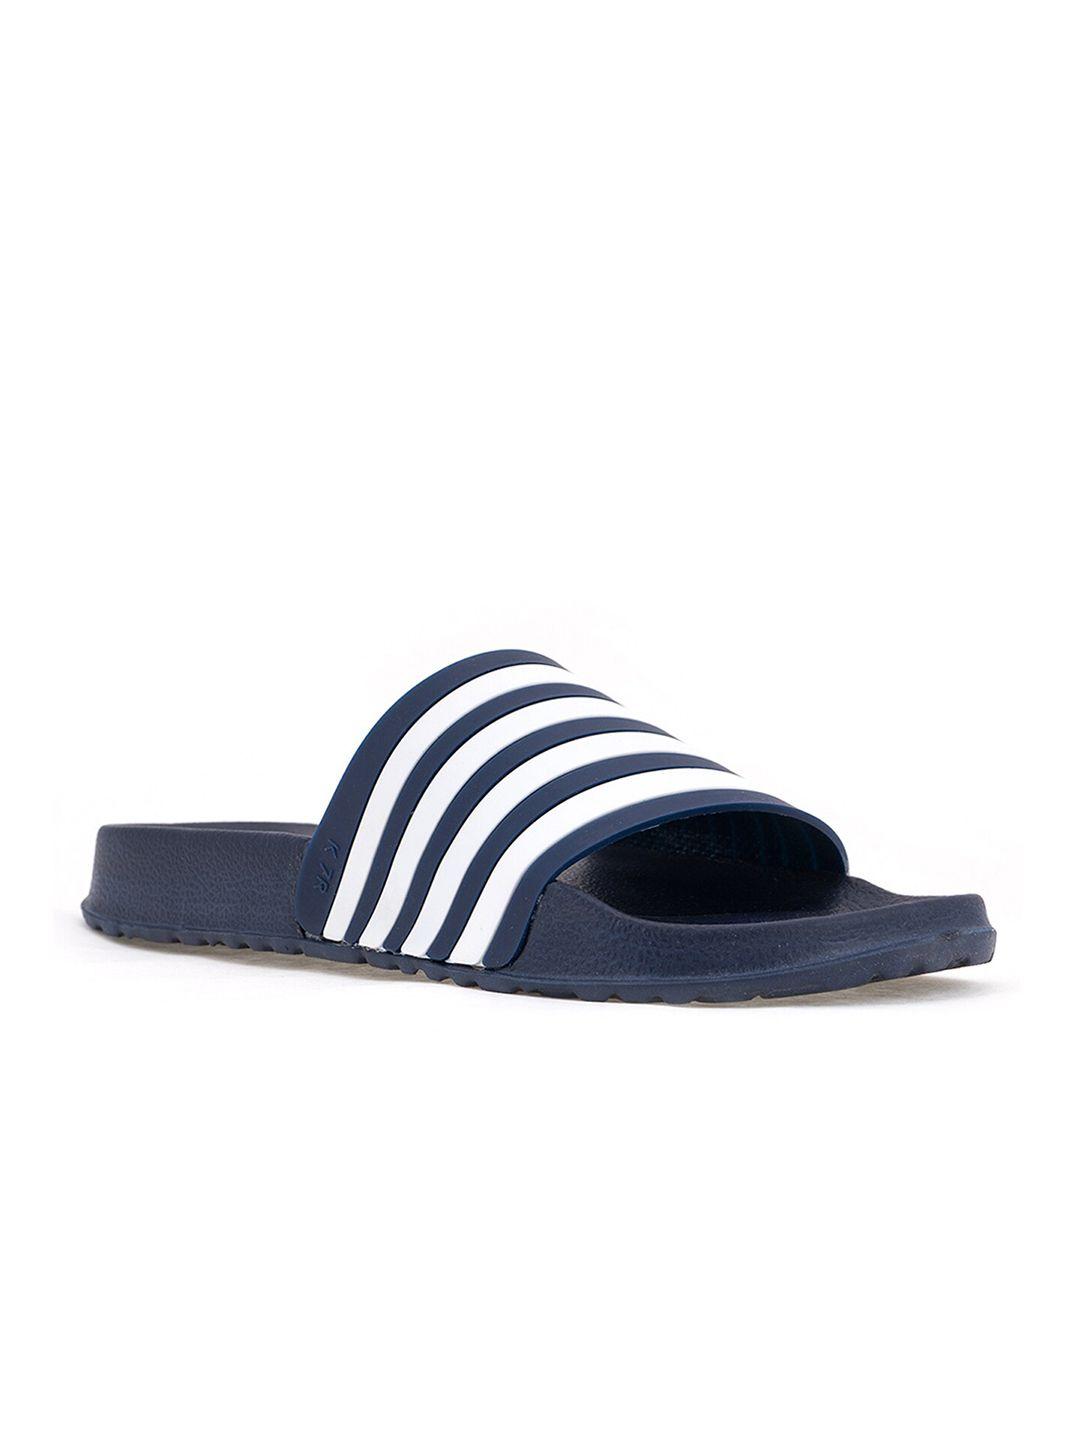 khadims men navy blue & white striped sliders